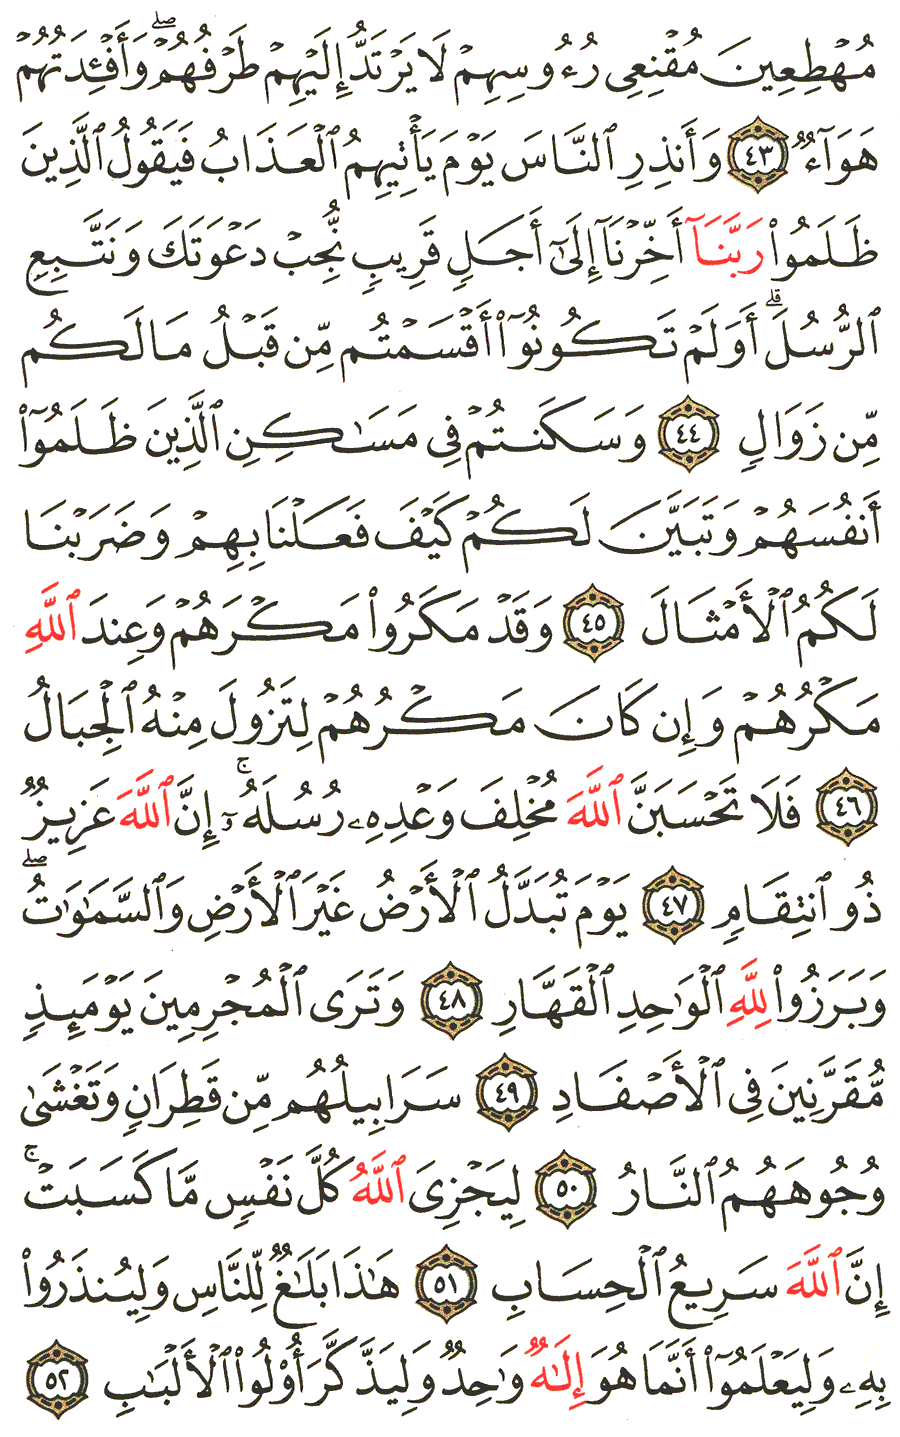 الصفحة رقم 261  من القرآن الكريم مكتوبة من المصحف